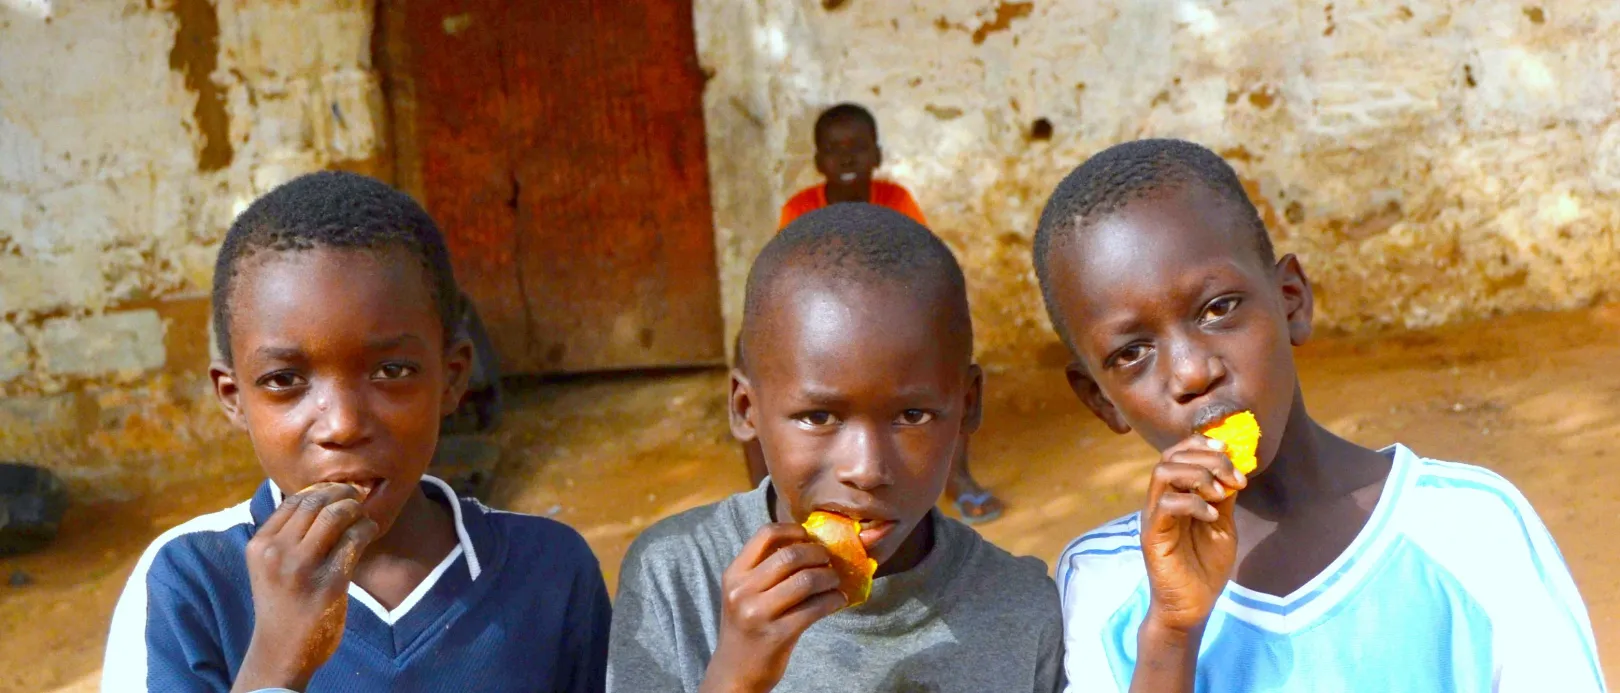 Szenegál, Mbour falu. A gyermekeknek nincs mit
enniük, gyakran csak a mangó az egyedüli, ami akad… Amikor egy kiflit adott nekik, mint a
kismadarak, összeverekedtek rajta. Aztán megtanulta, hogy nem nekik kell odaadni,
hanem az anyjuknak, hogy ossza szét közöttük – Fotó: Turós Margaréta